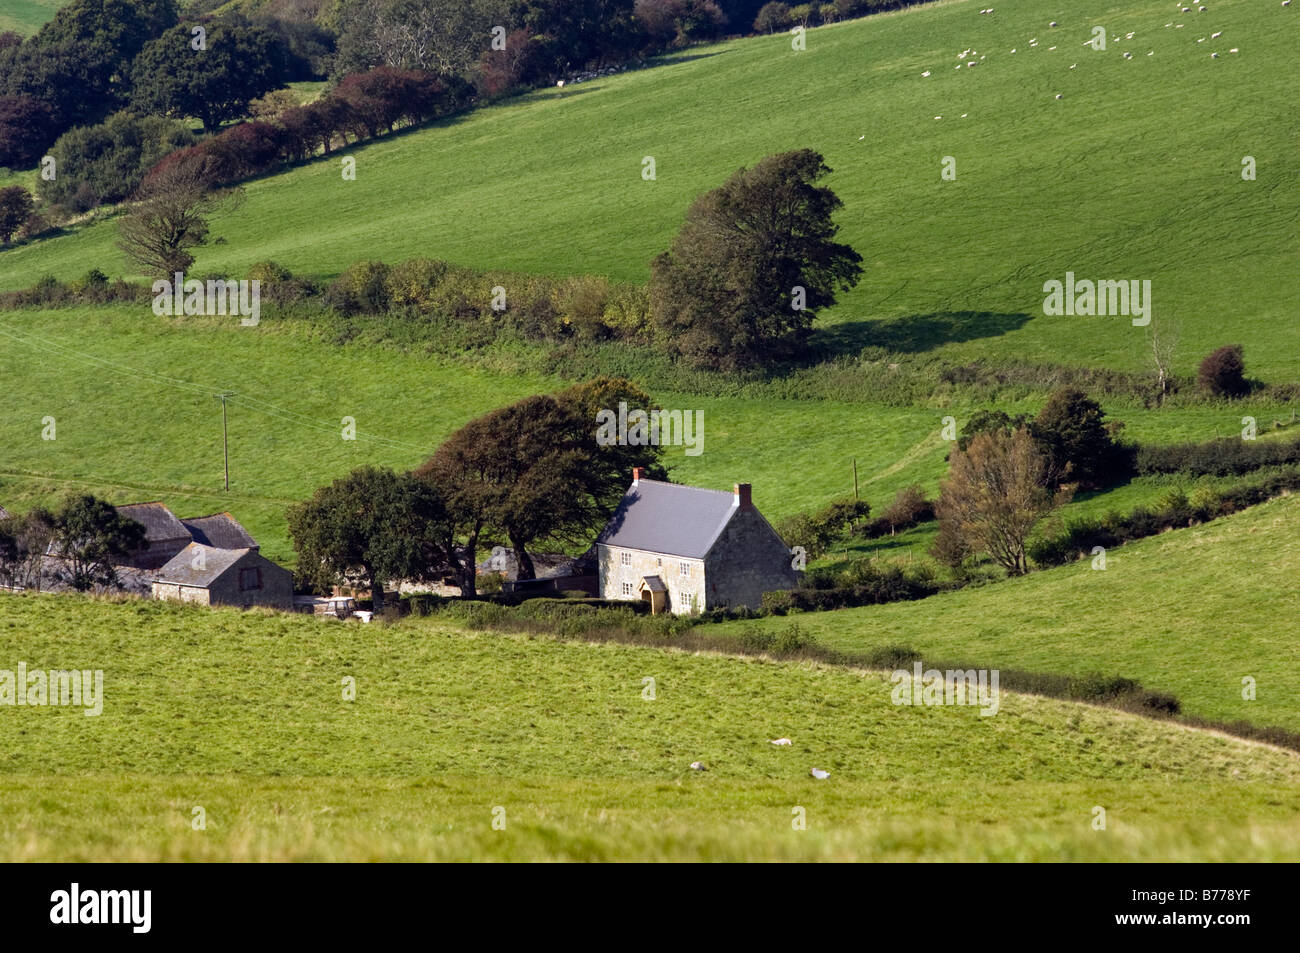 A rural farmhouse near Whitwell. Stock Photo